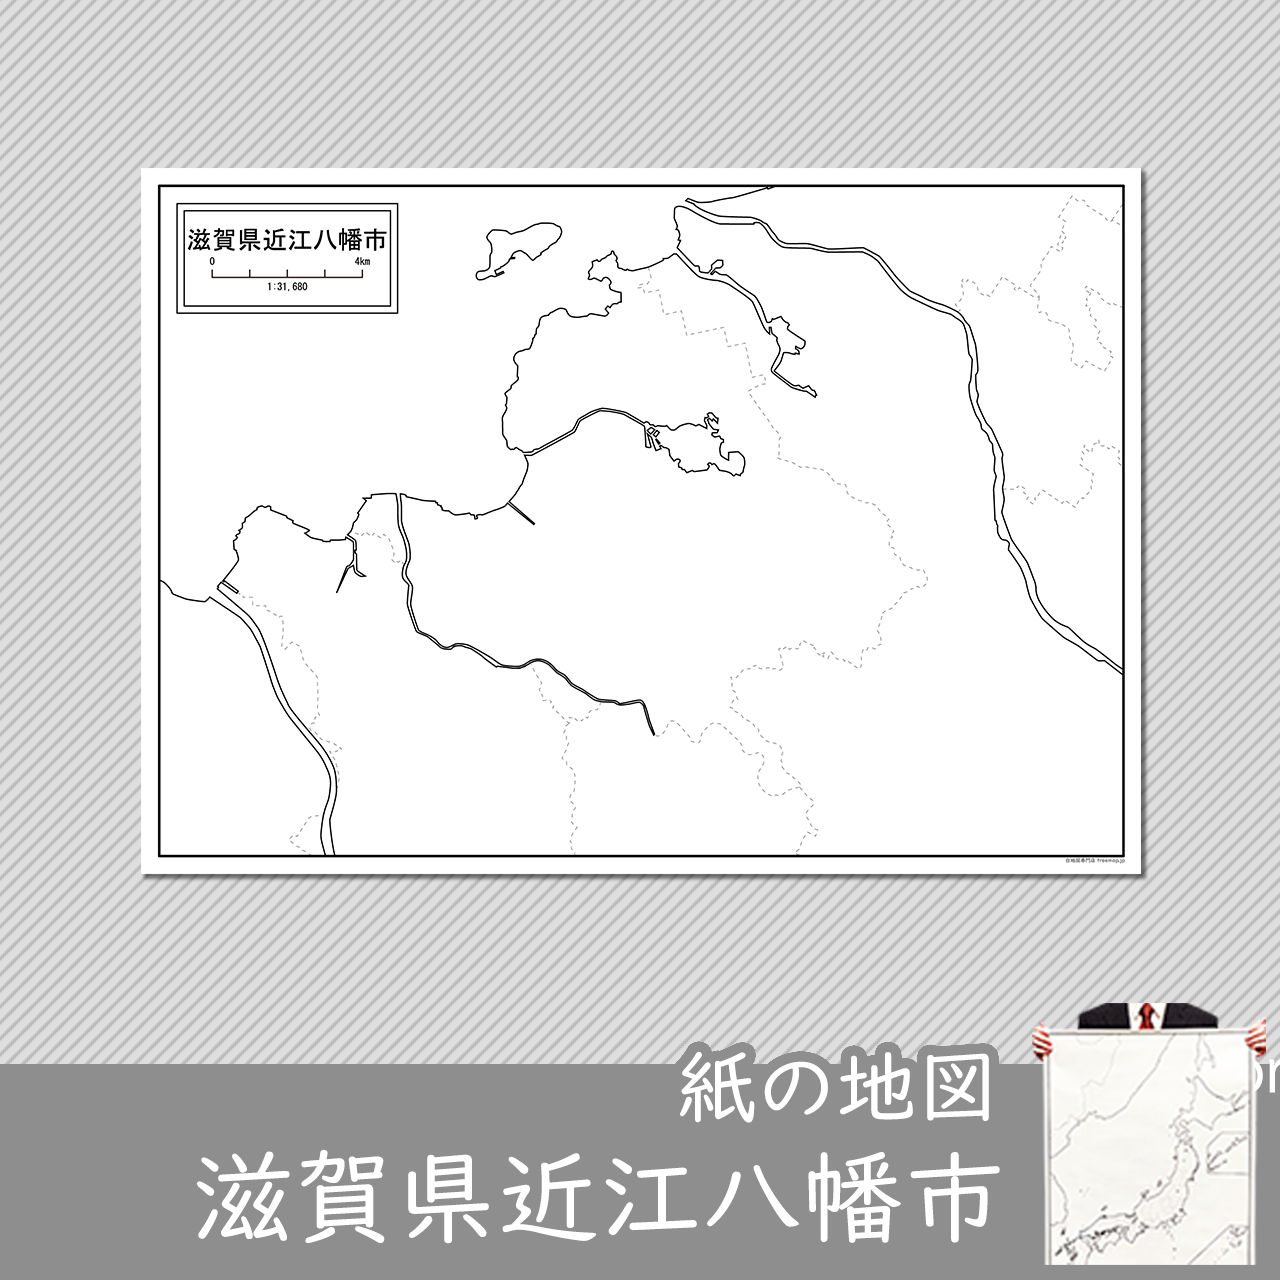 近江八幡市の紙の白地図のサムネイル